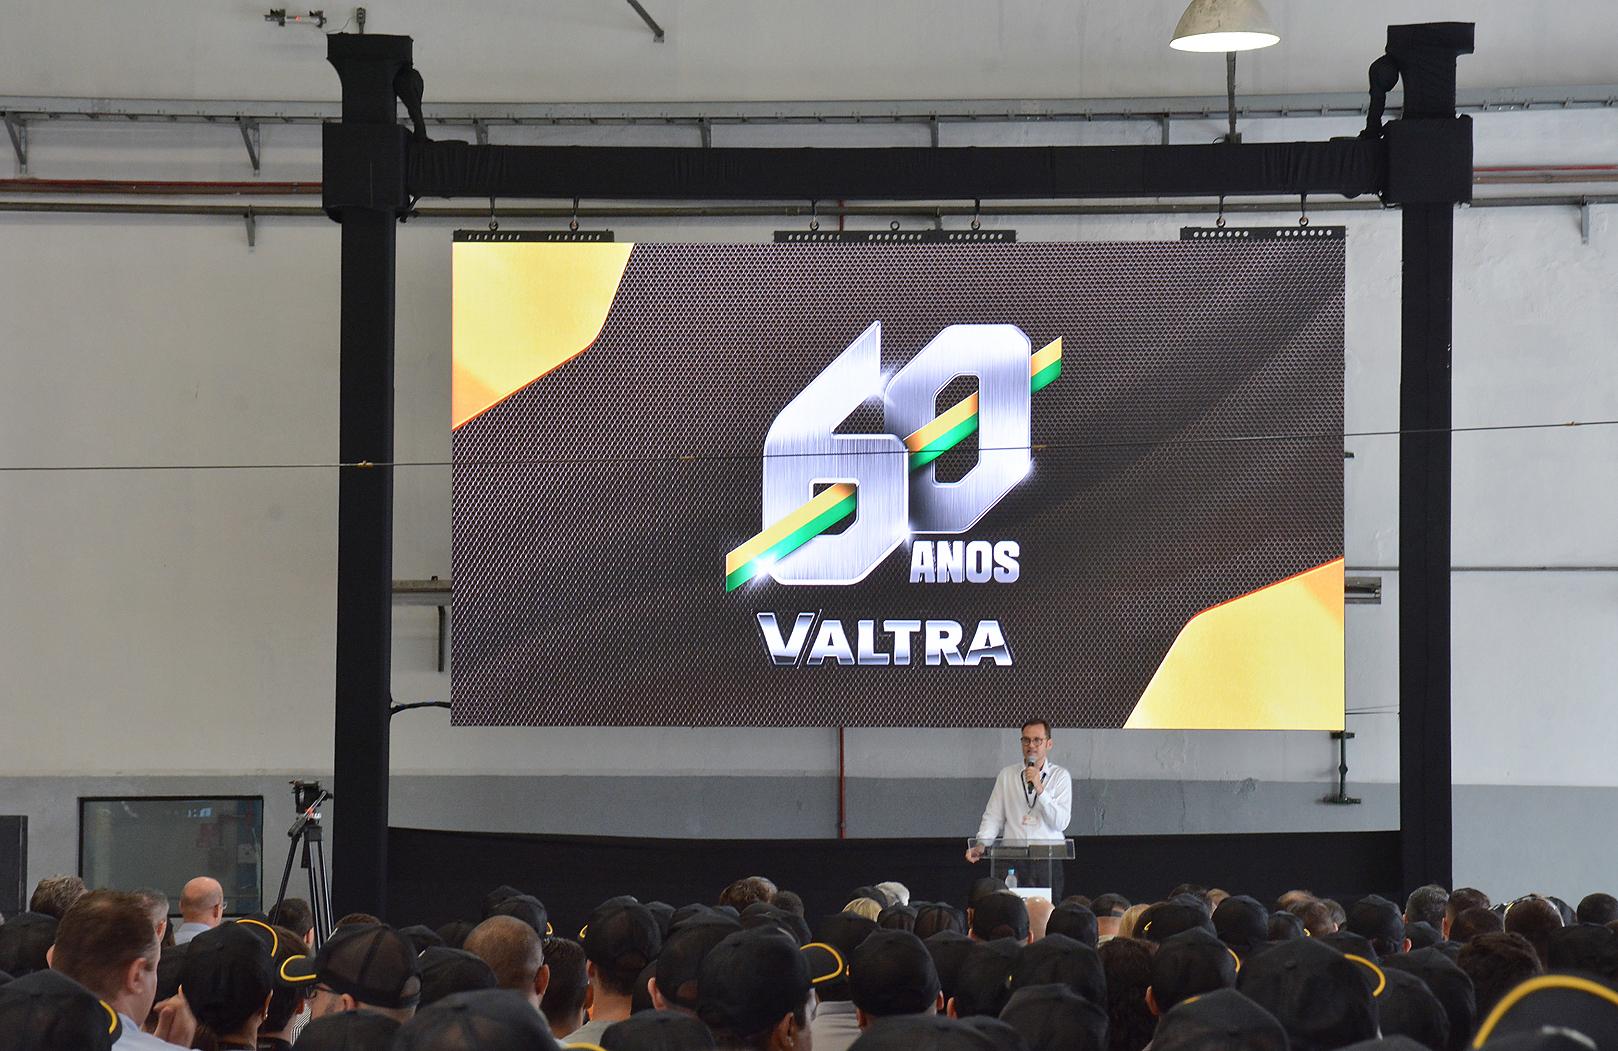 Valtra in Brasilien feiert 60-jähriges Bestehen